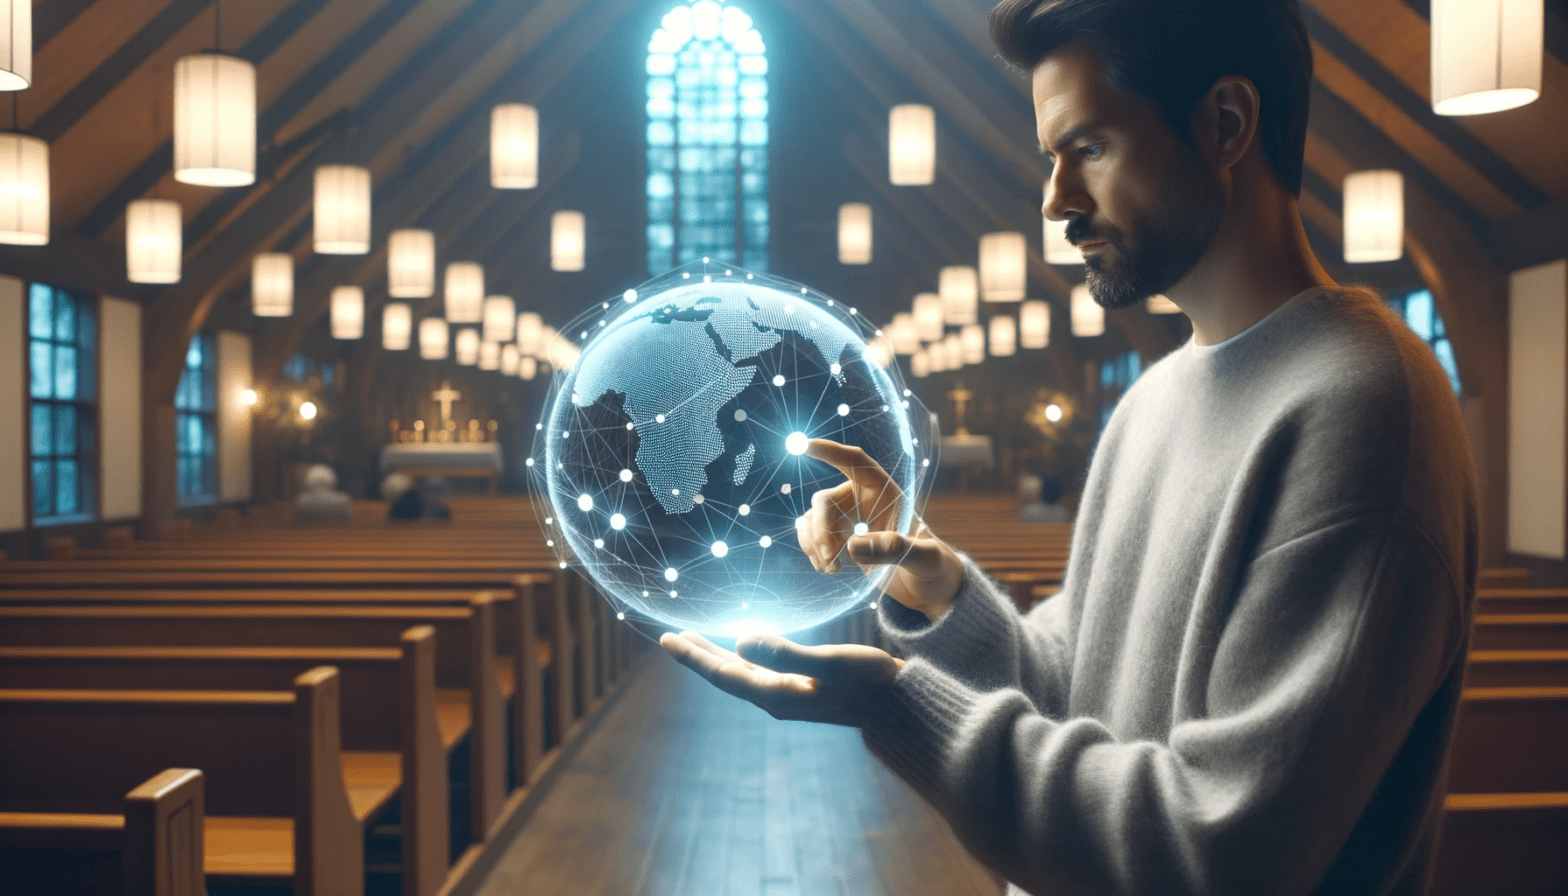 Digital Evangelism: Case Study Shared The Gospel 20K Times